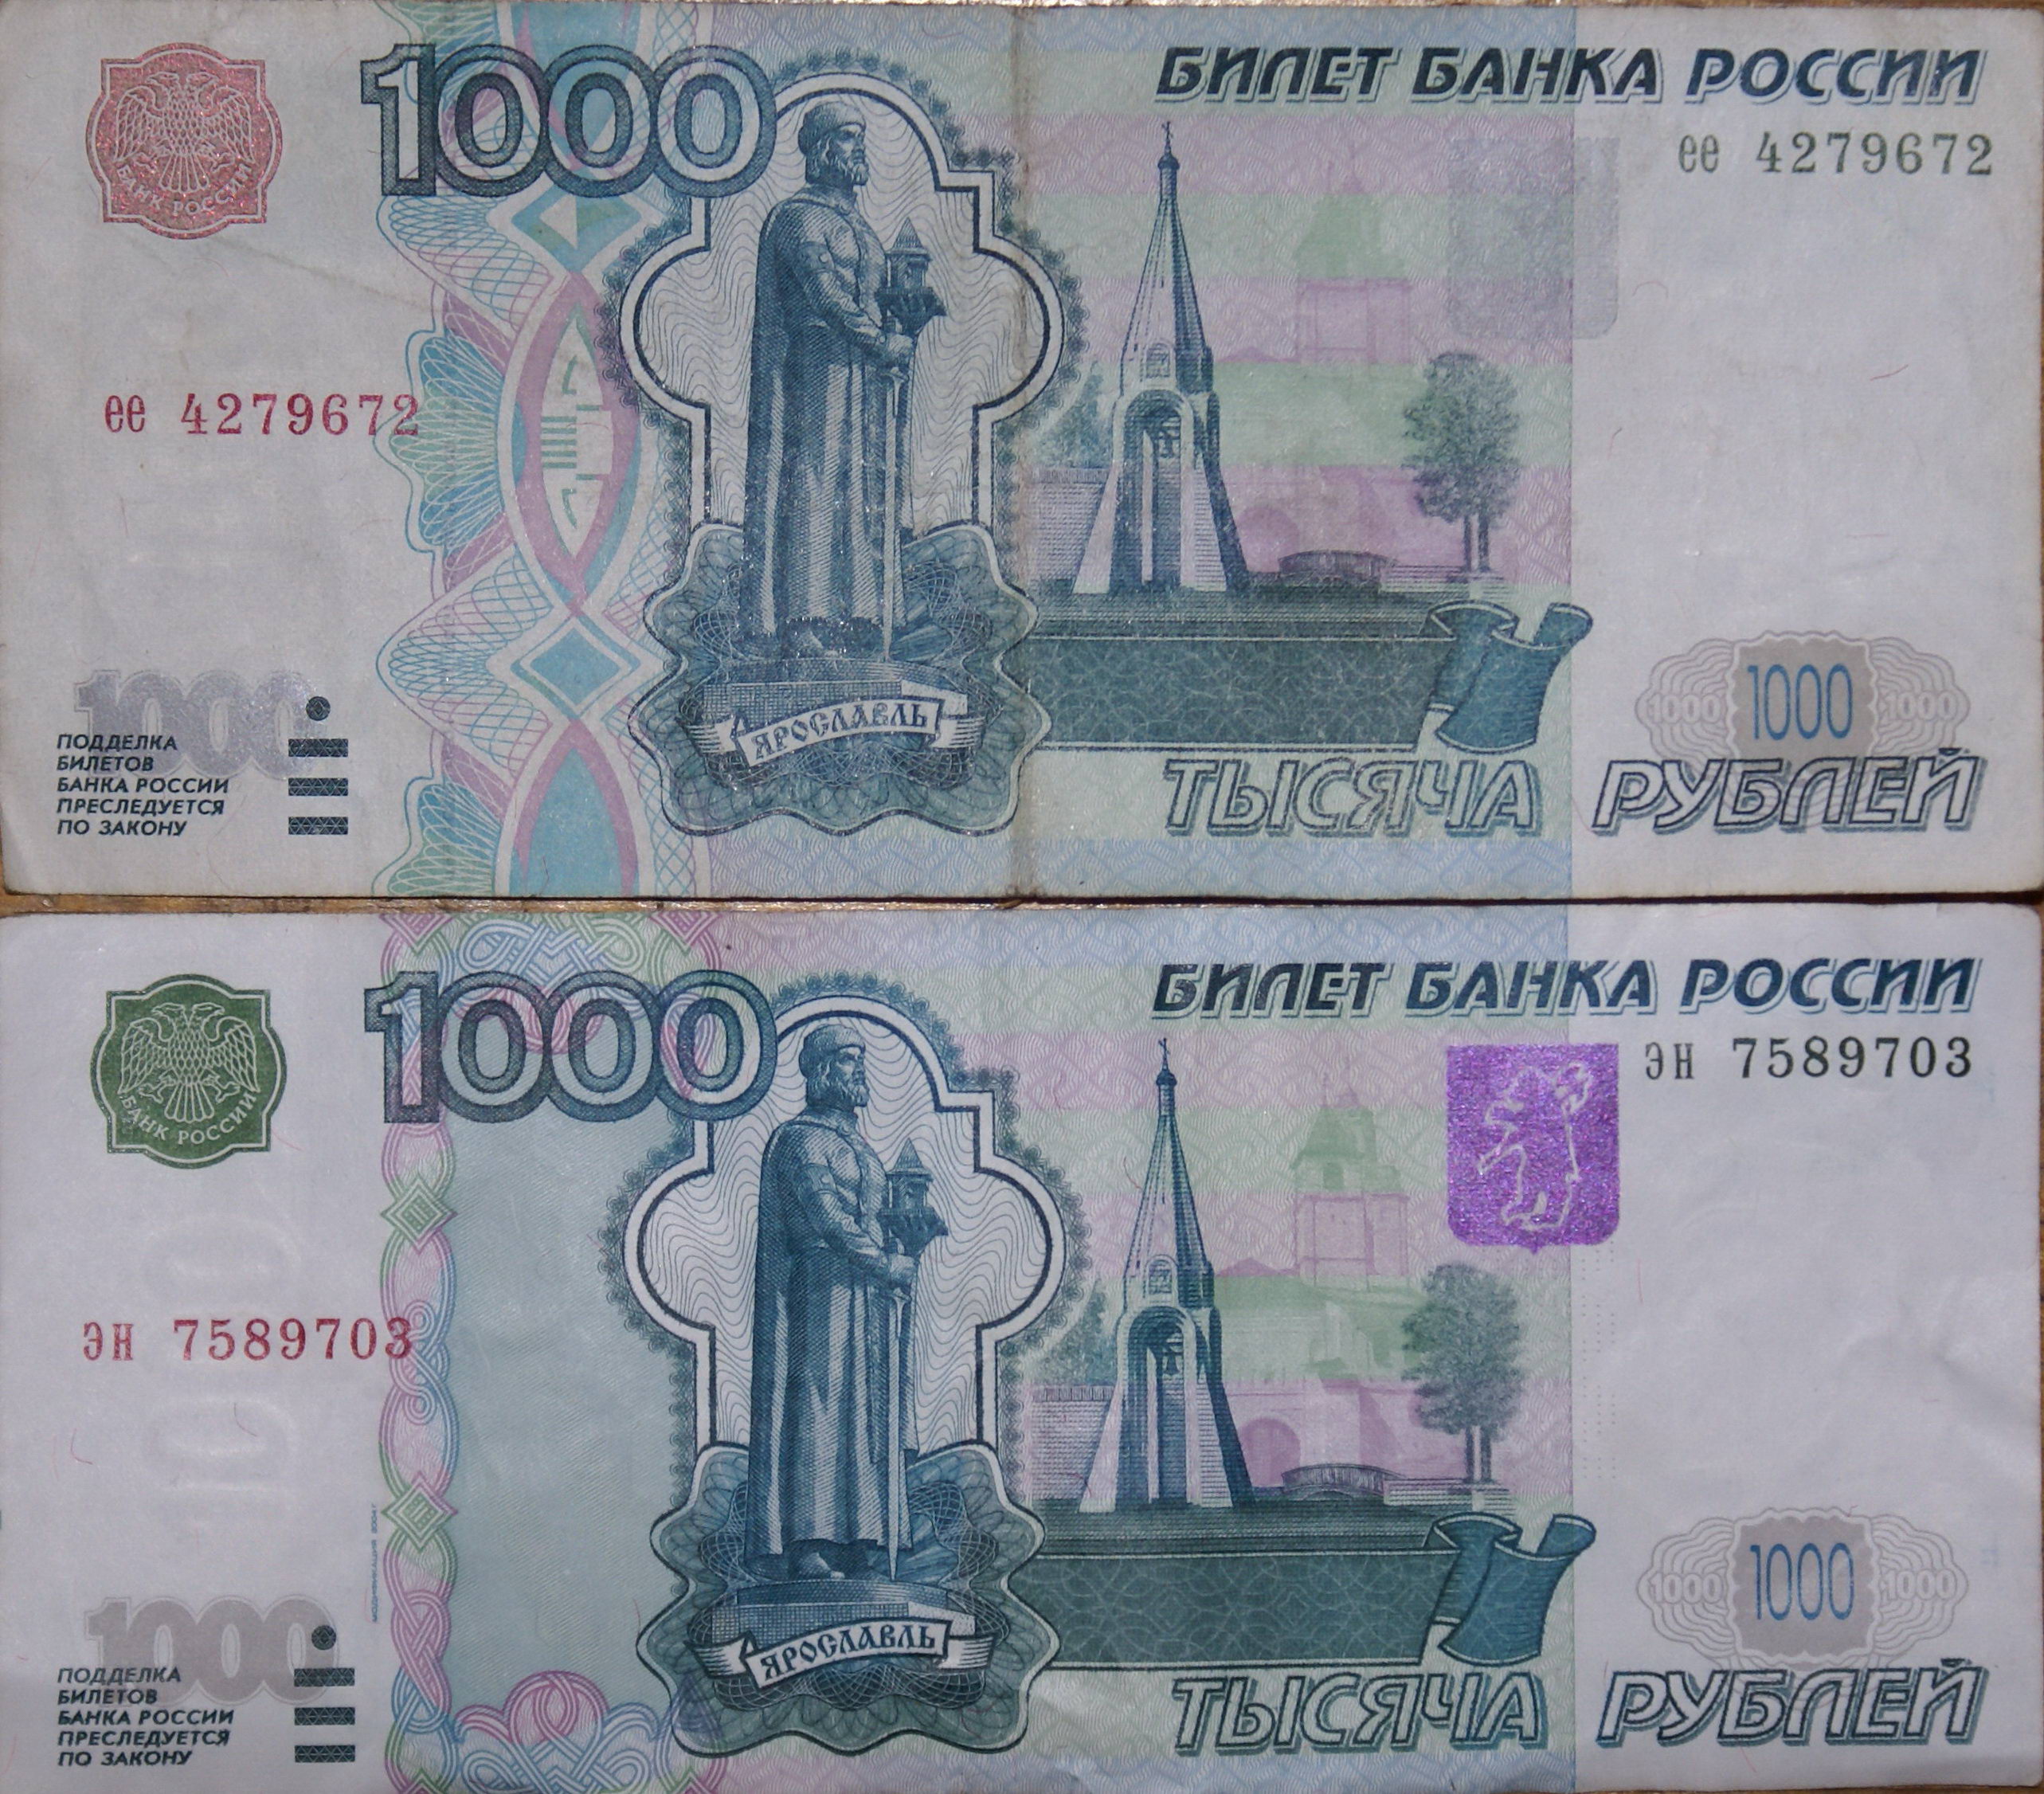 1000 1 ру. Тысячная купюра 1997 года. Купюра 1000 р 1997 года. Купюра 1000 рублей старого образца 1997. 1000 Купюра 1997 года старого образца.